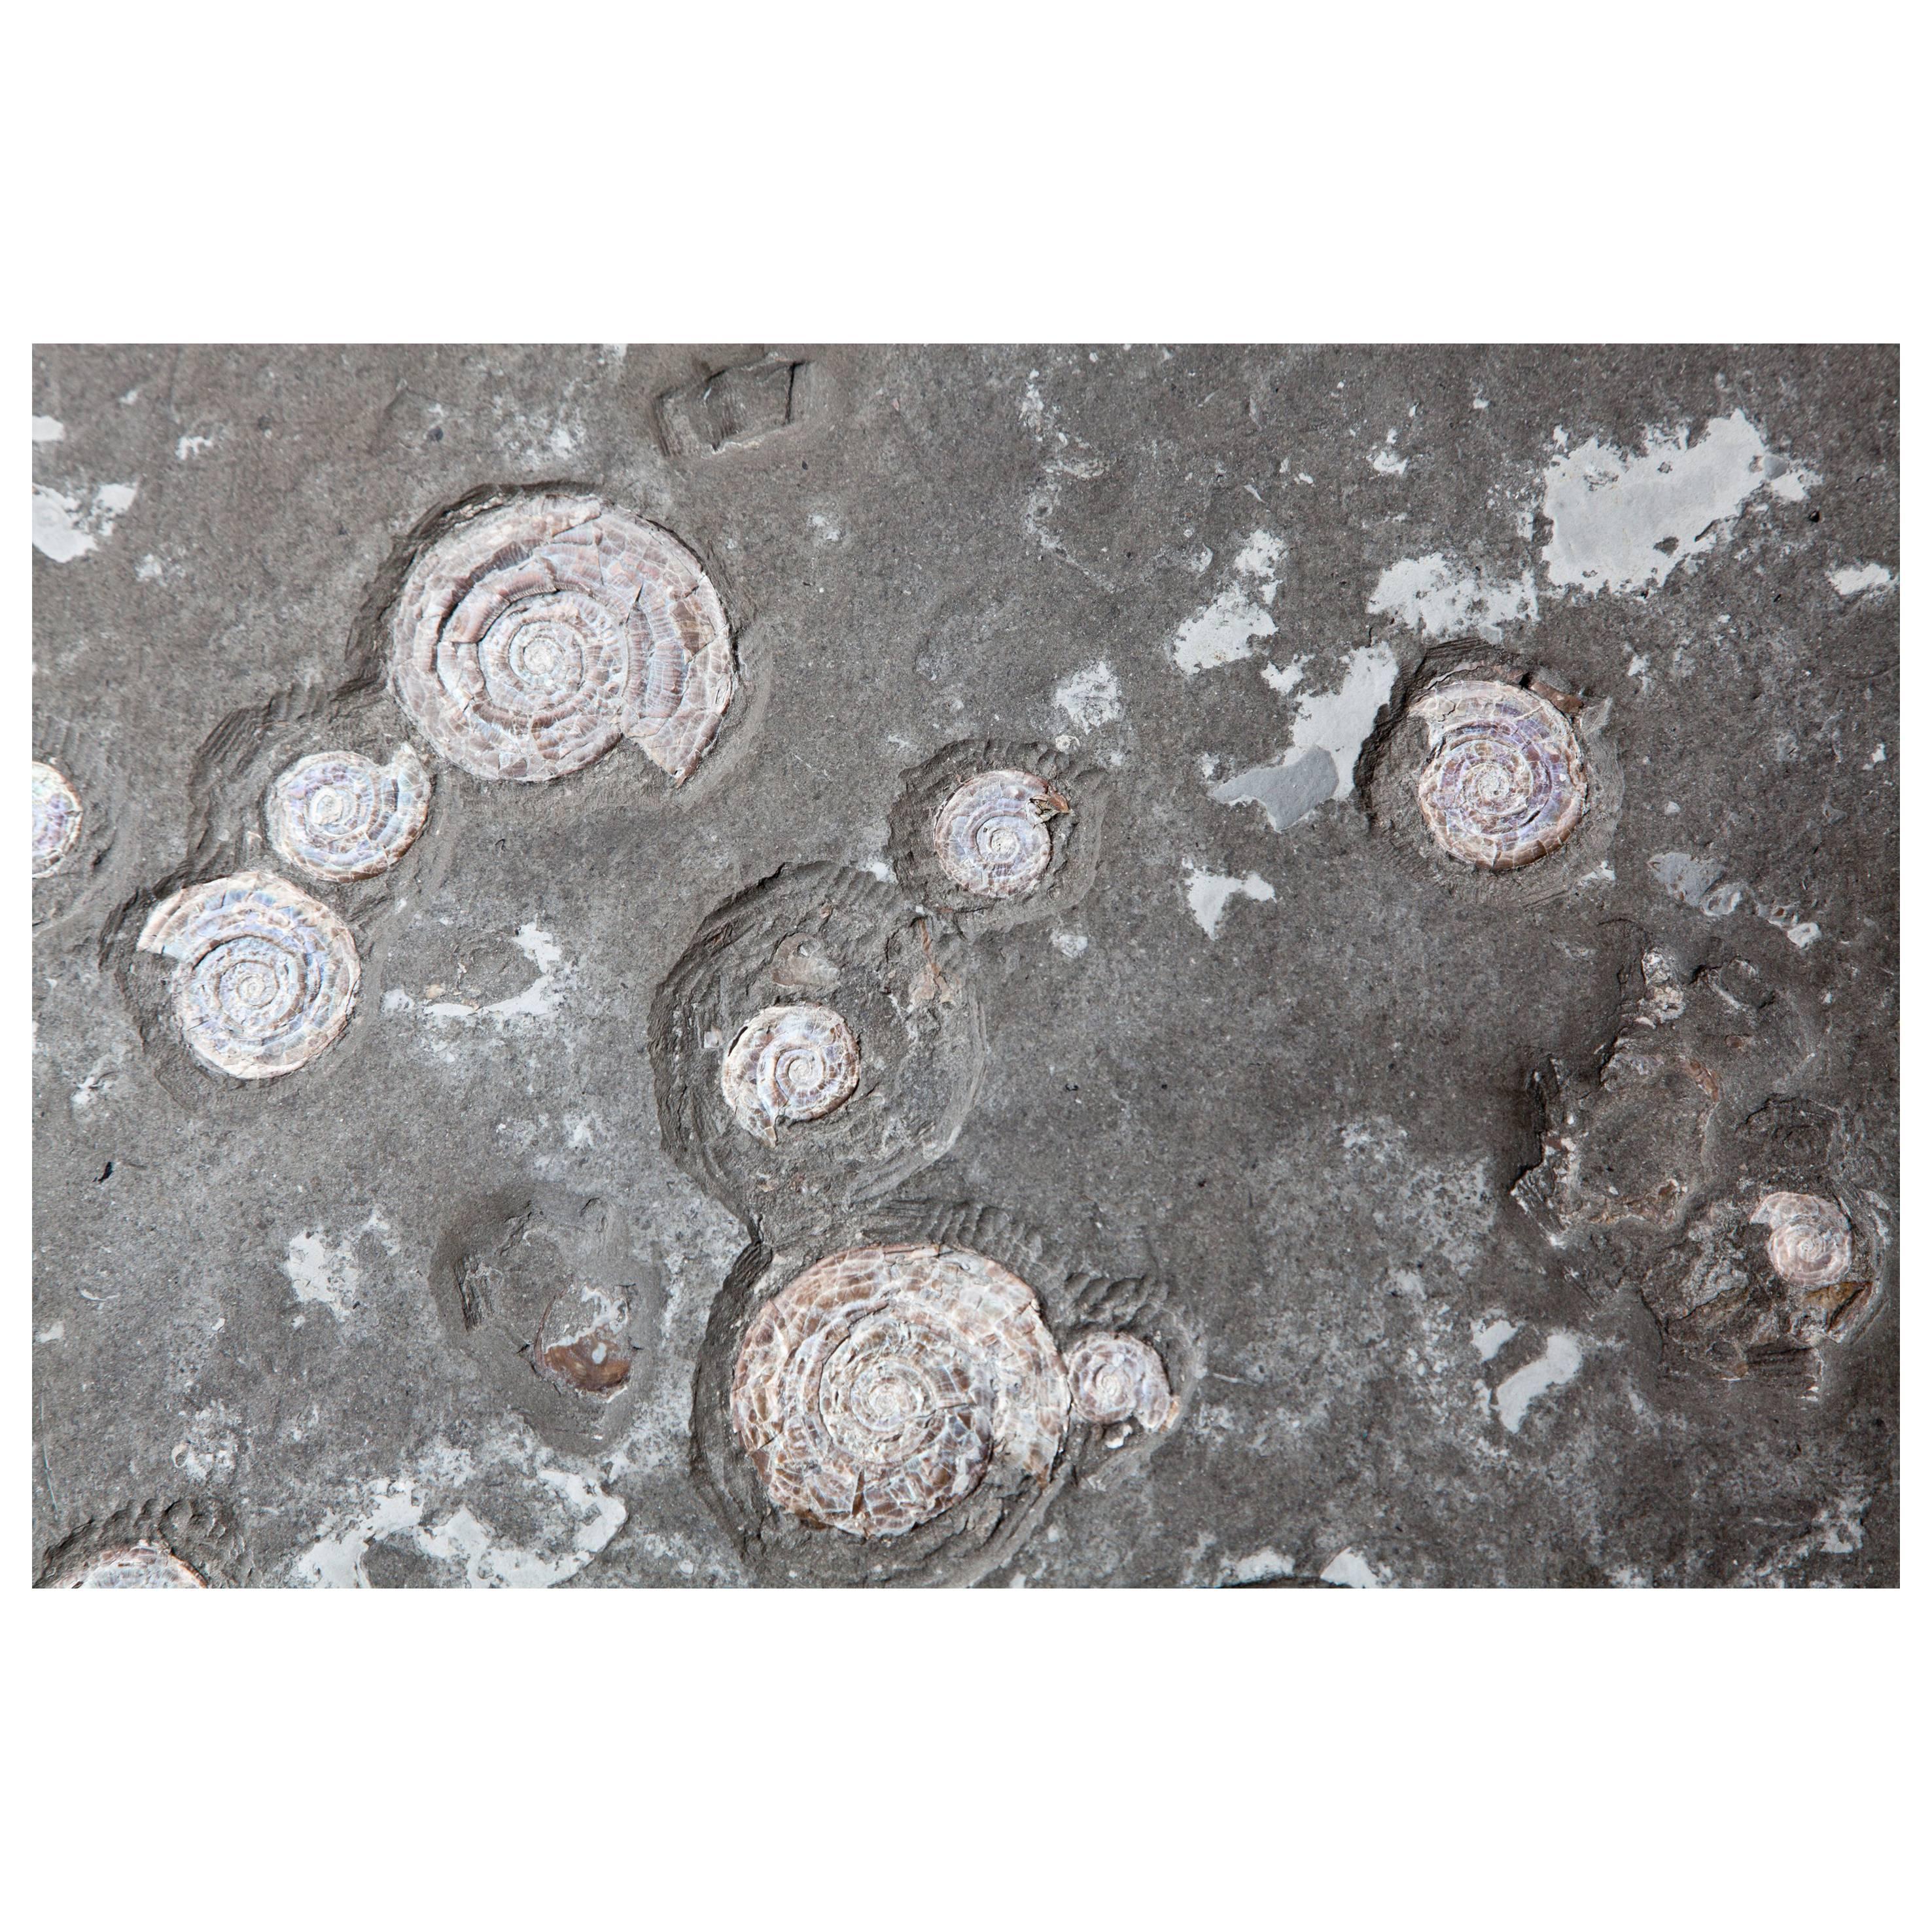 United Kingdom Ammonite Fossil Plate